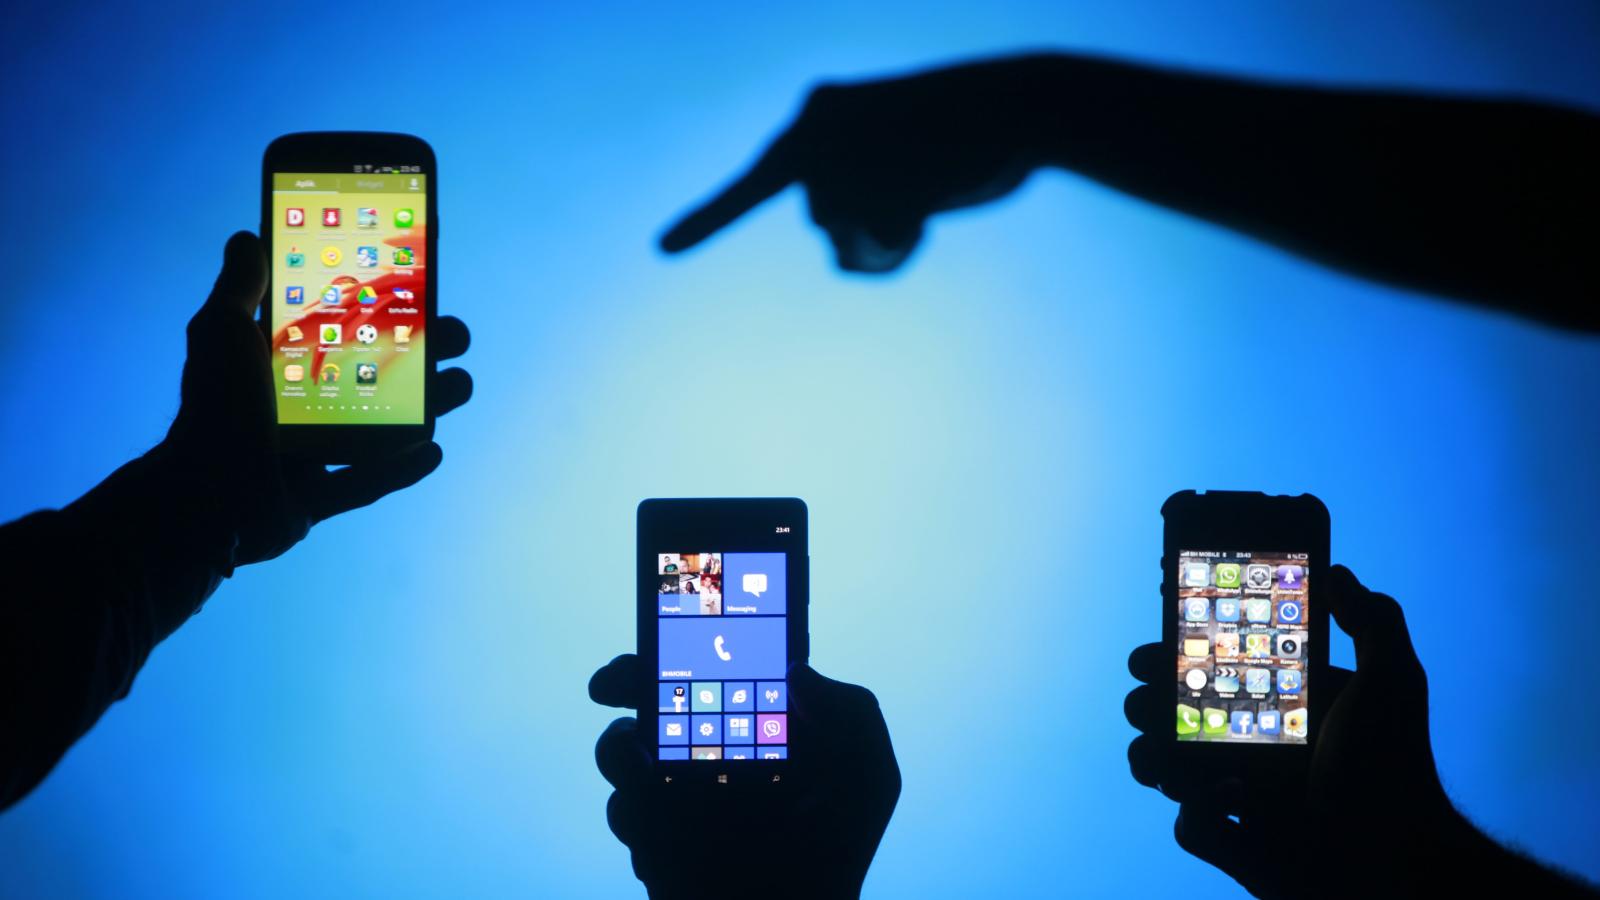 केंद्र सरकार ने 43 और मोबाइल ऐप पर प्रतिबंध लगाया